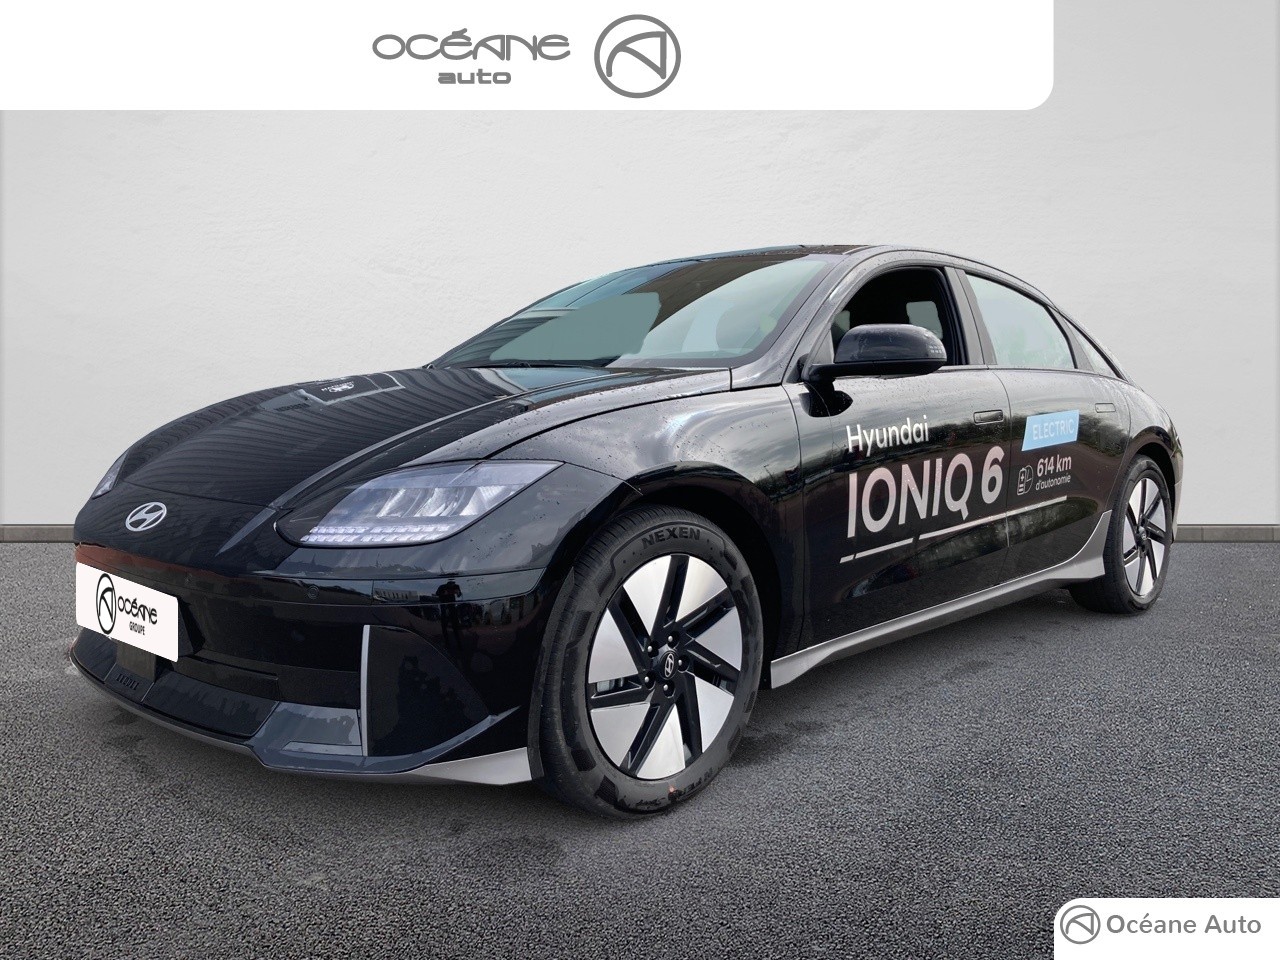 HYUNDAI IONIQ 6 Ioniq 6 77 kWh 229 ch - Véhicule Occasion Océane Auto